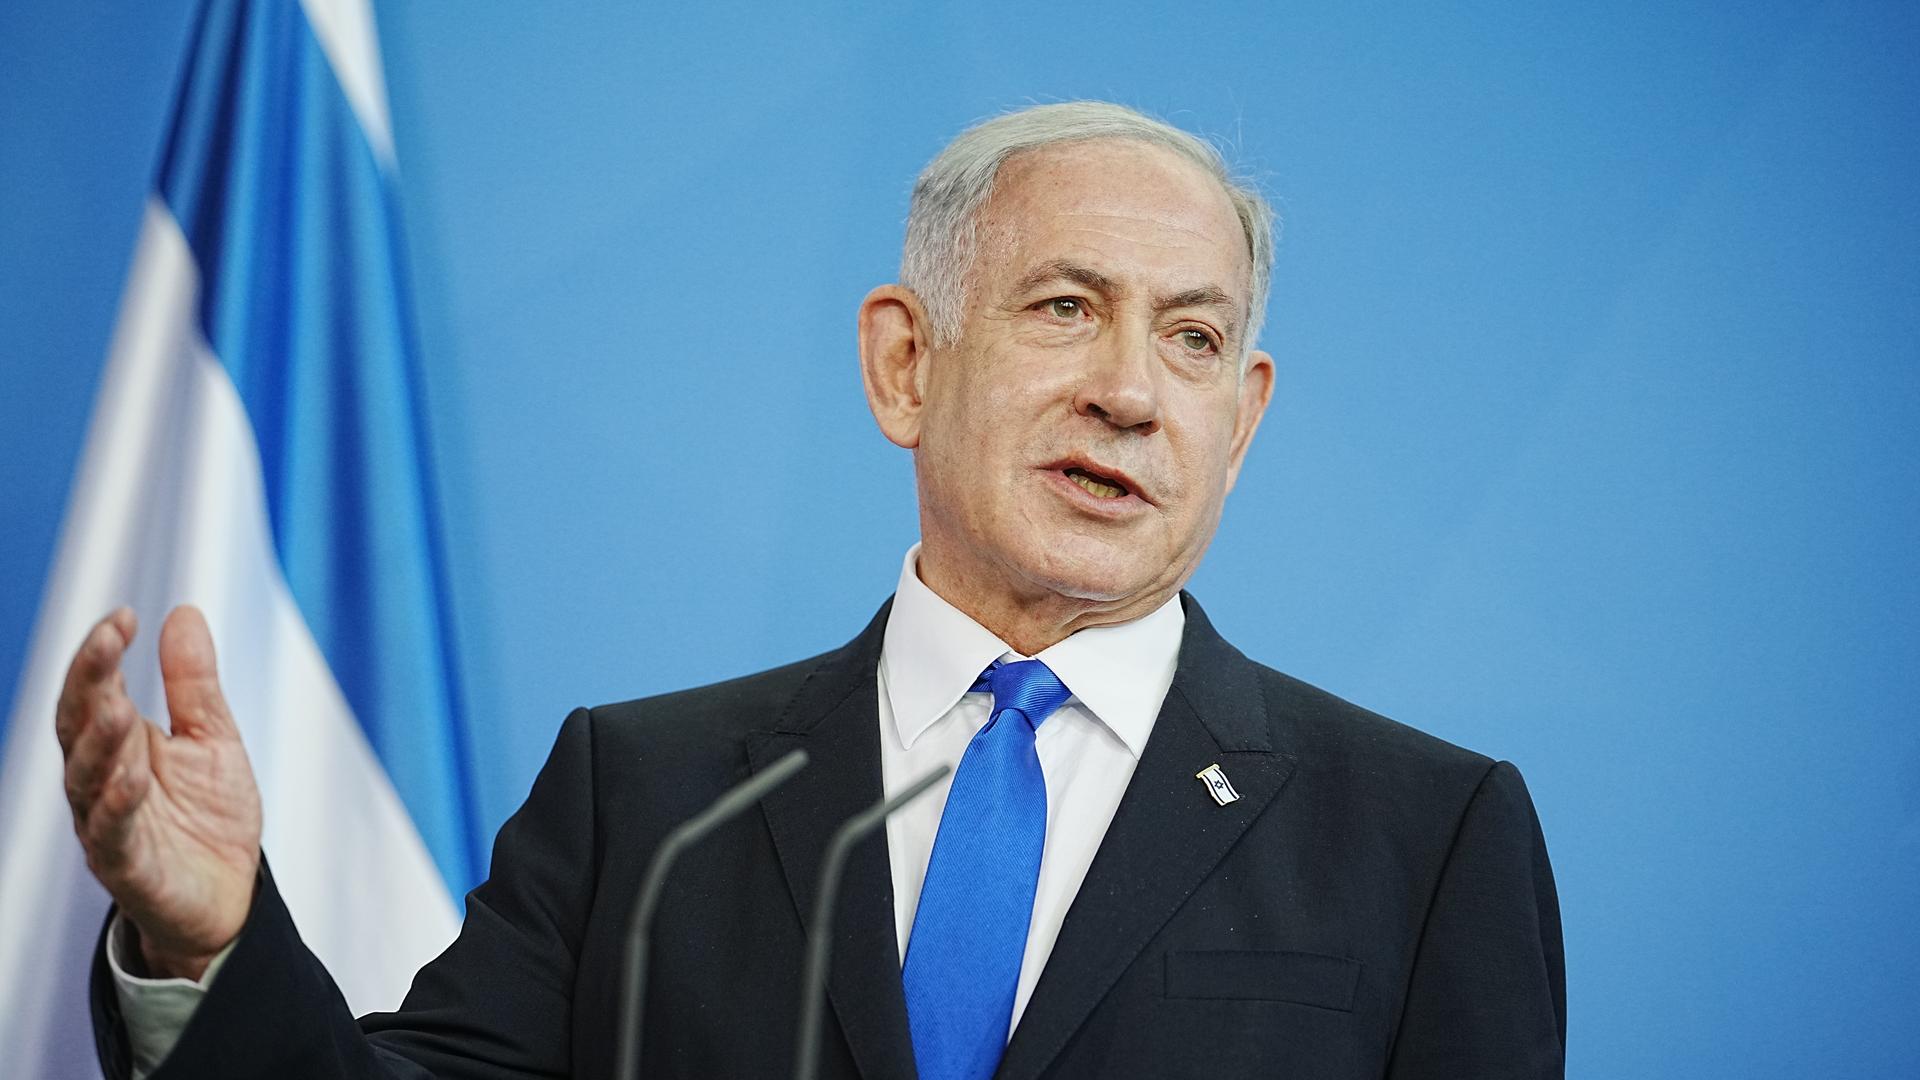 Benjamin Netanjahu steht vor einer israelischen Flagge und spricht. 